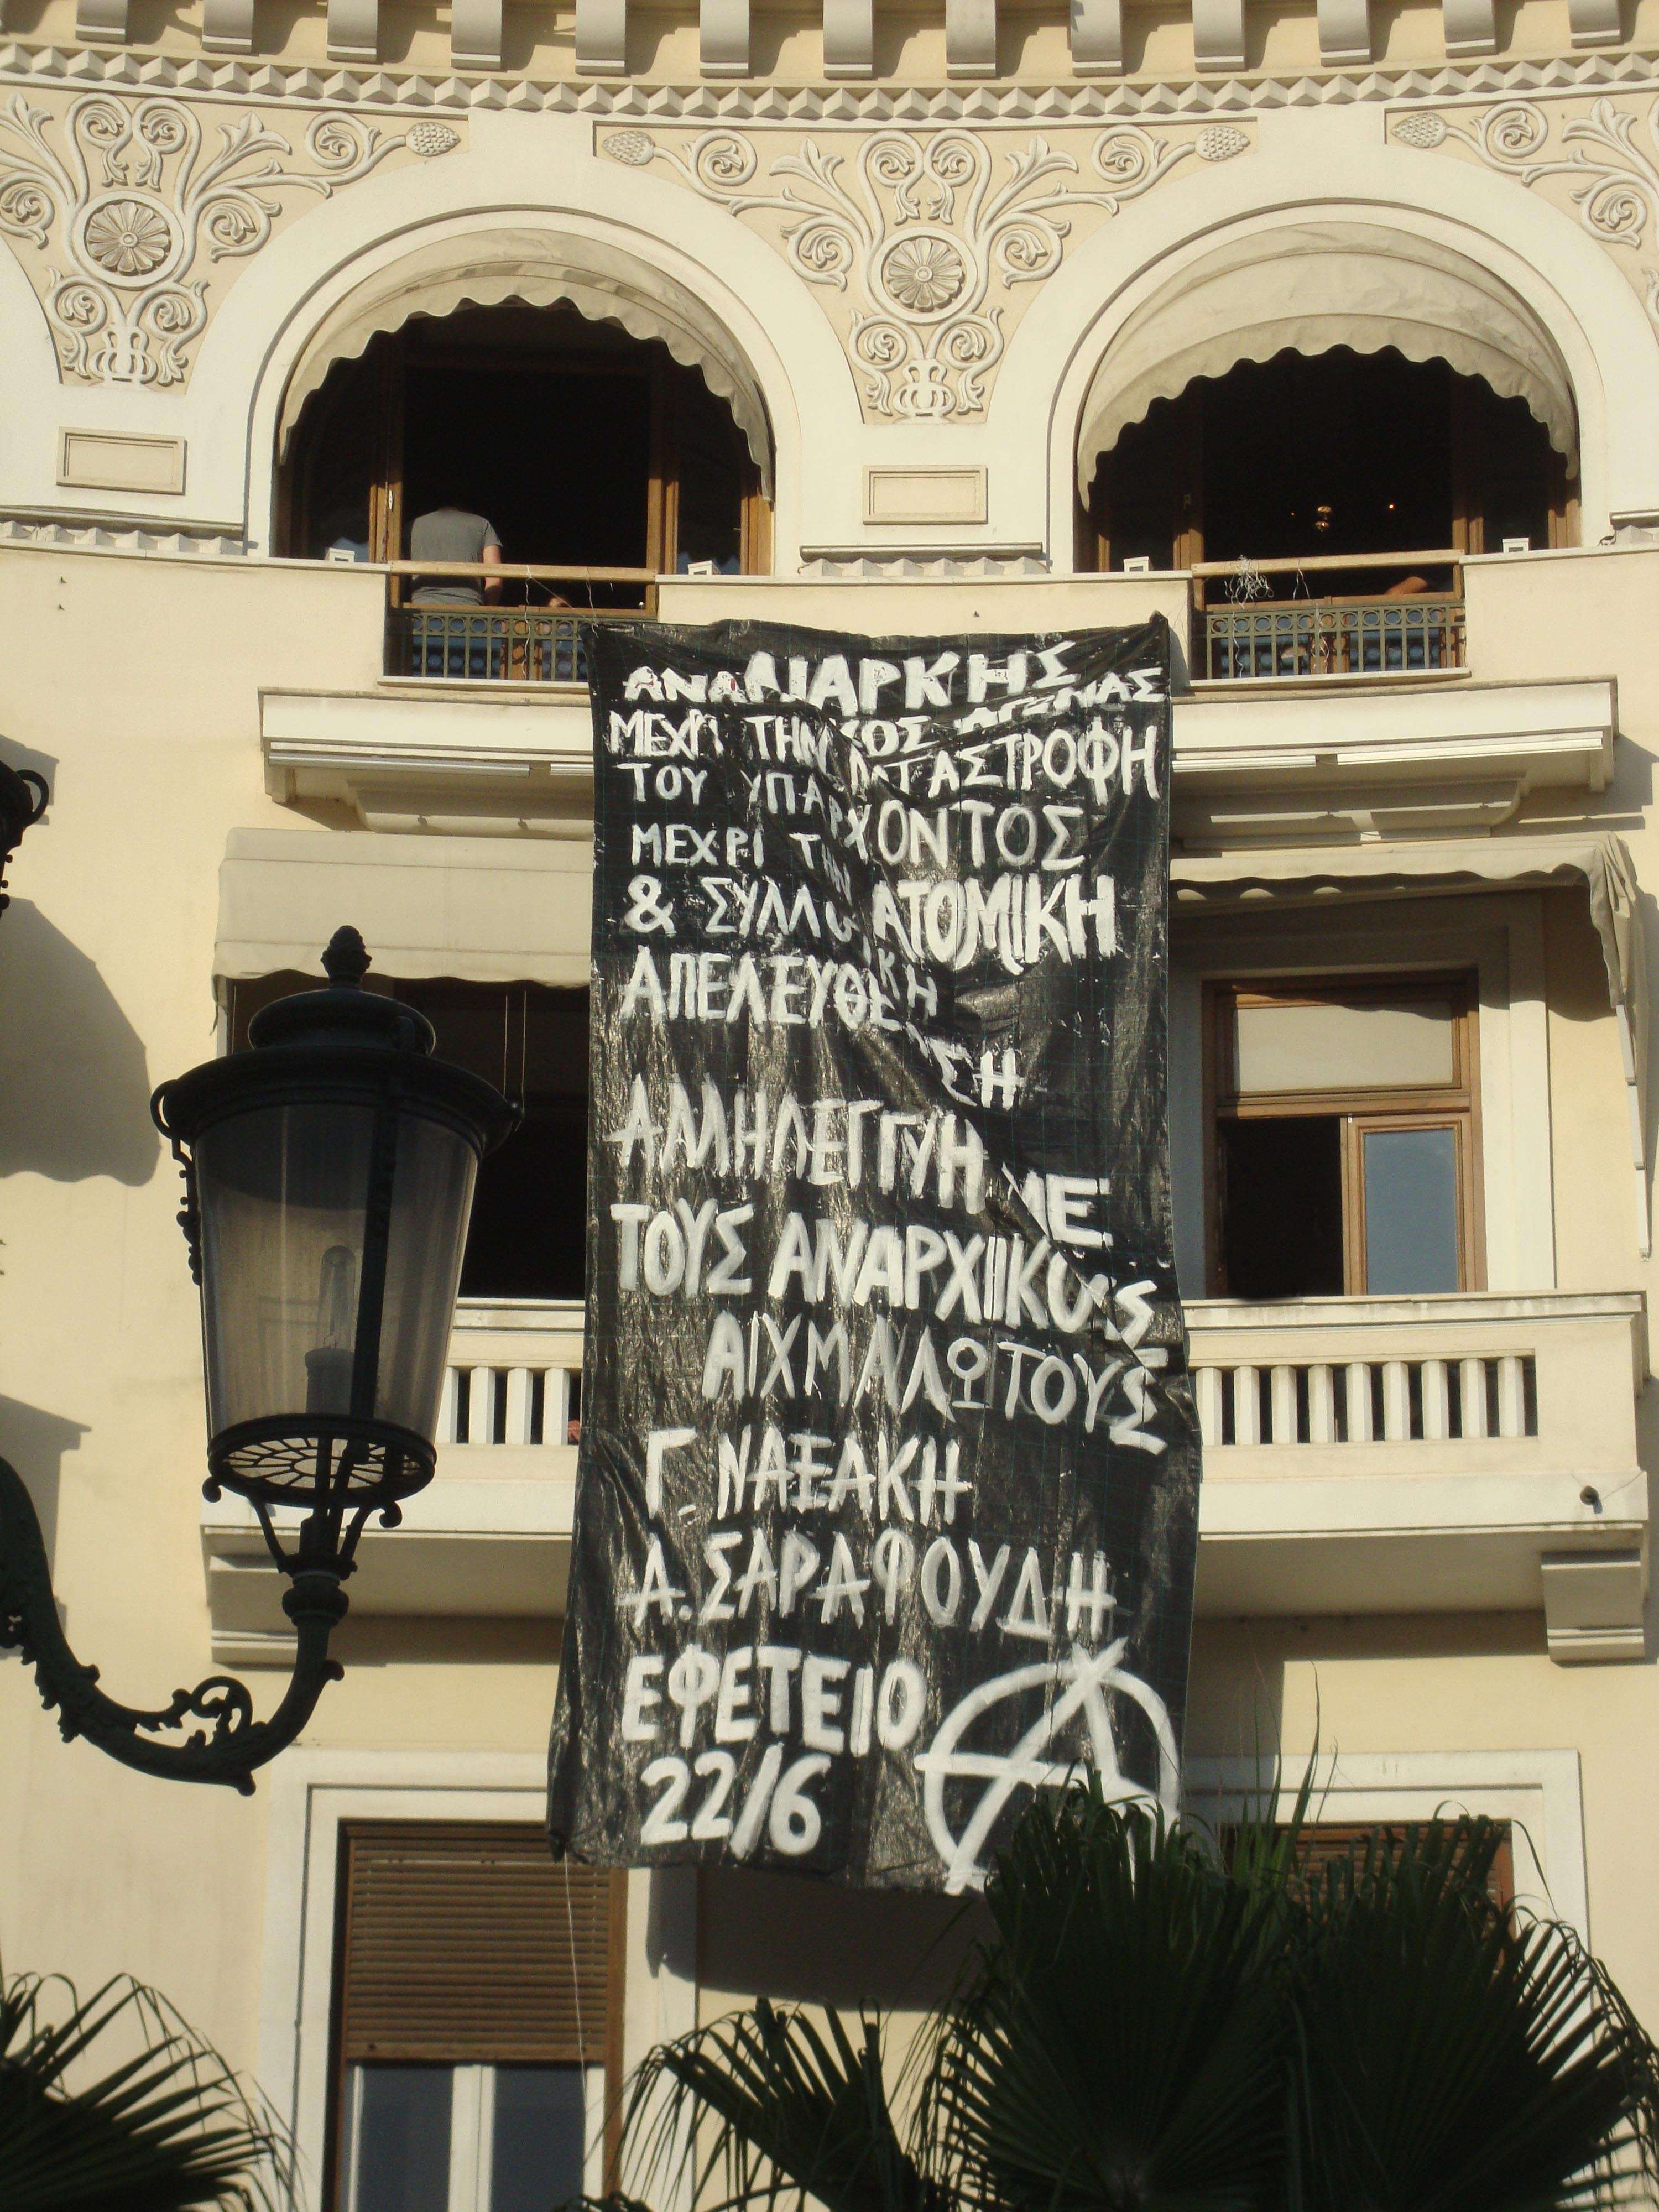 ΣΑΣΤΑ: Παρέμβαση Θεσσαλονίκη για Γ. Ναξάκη και Γ. Σαραφούδη